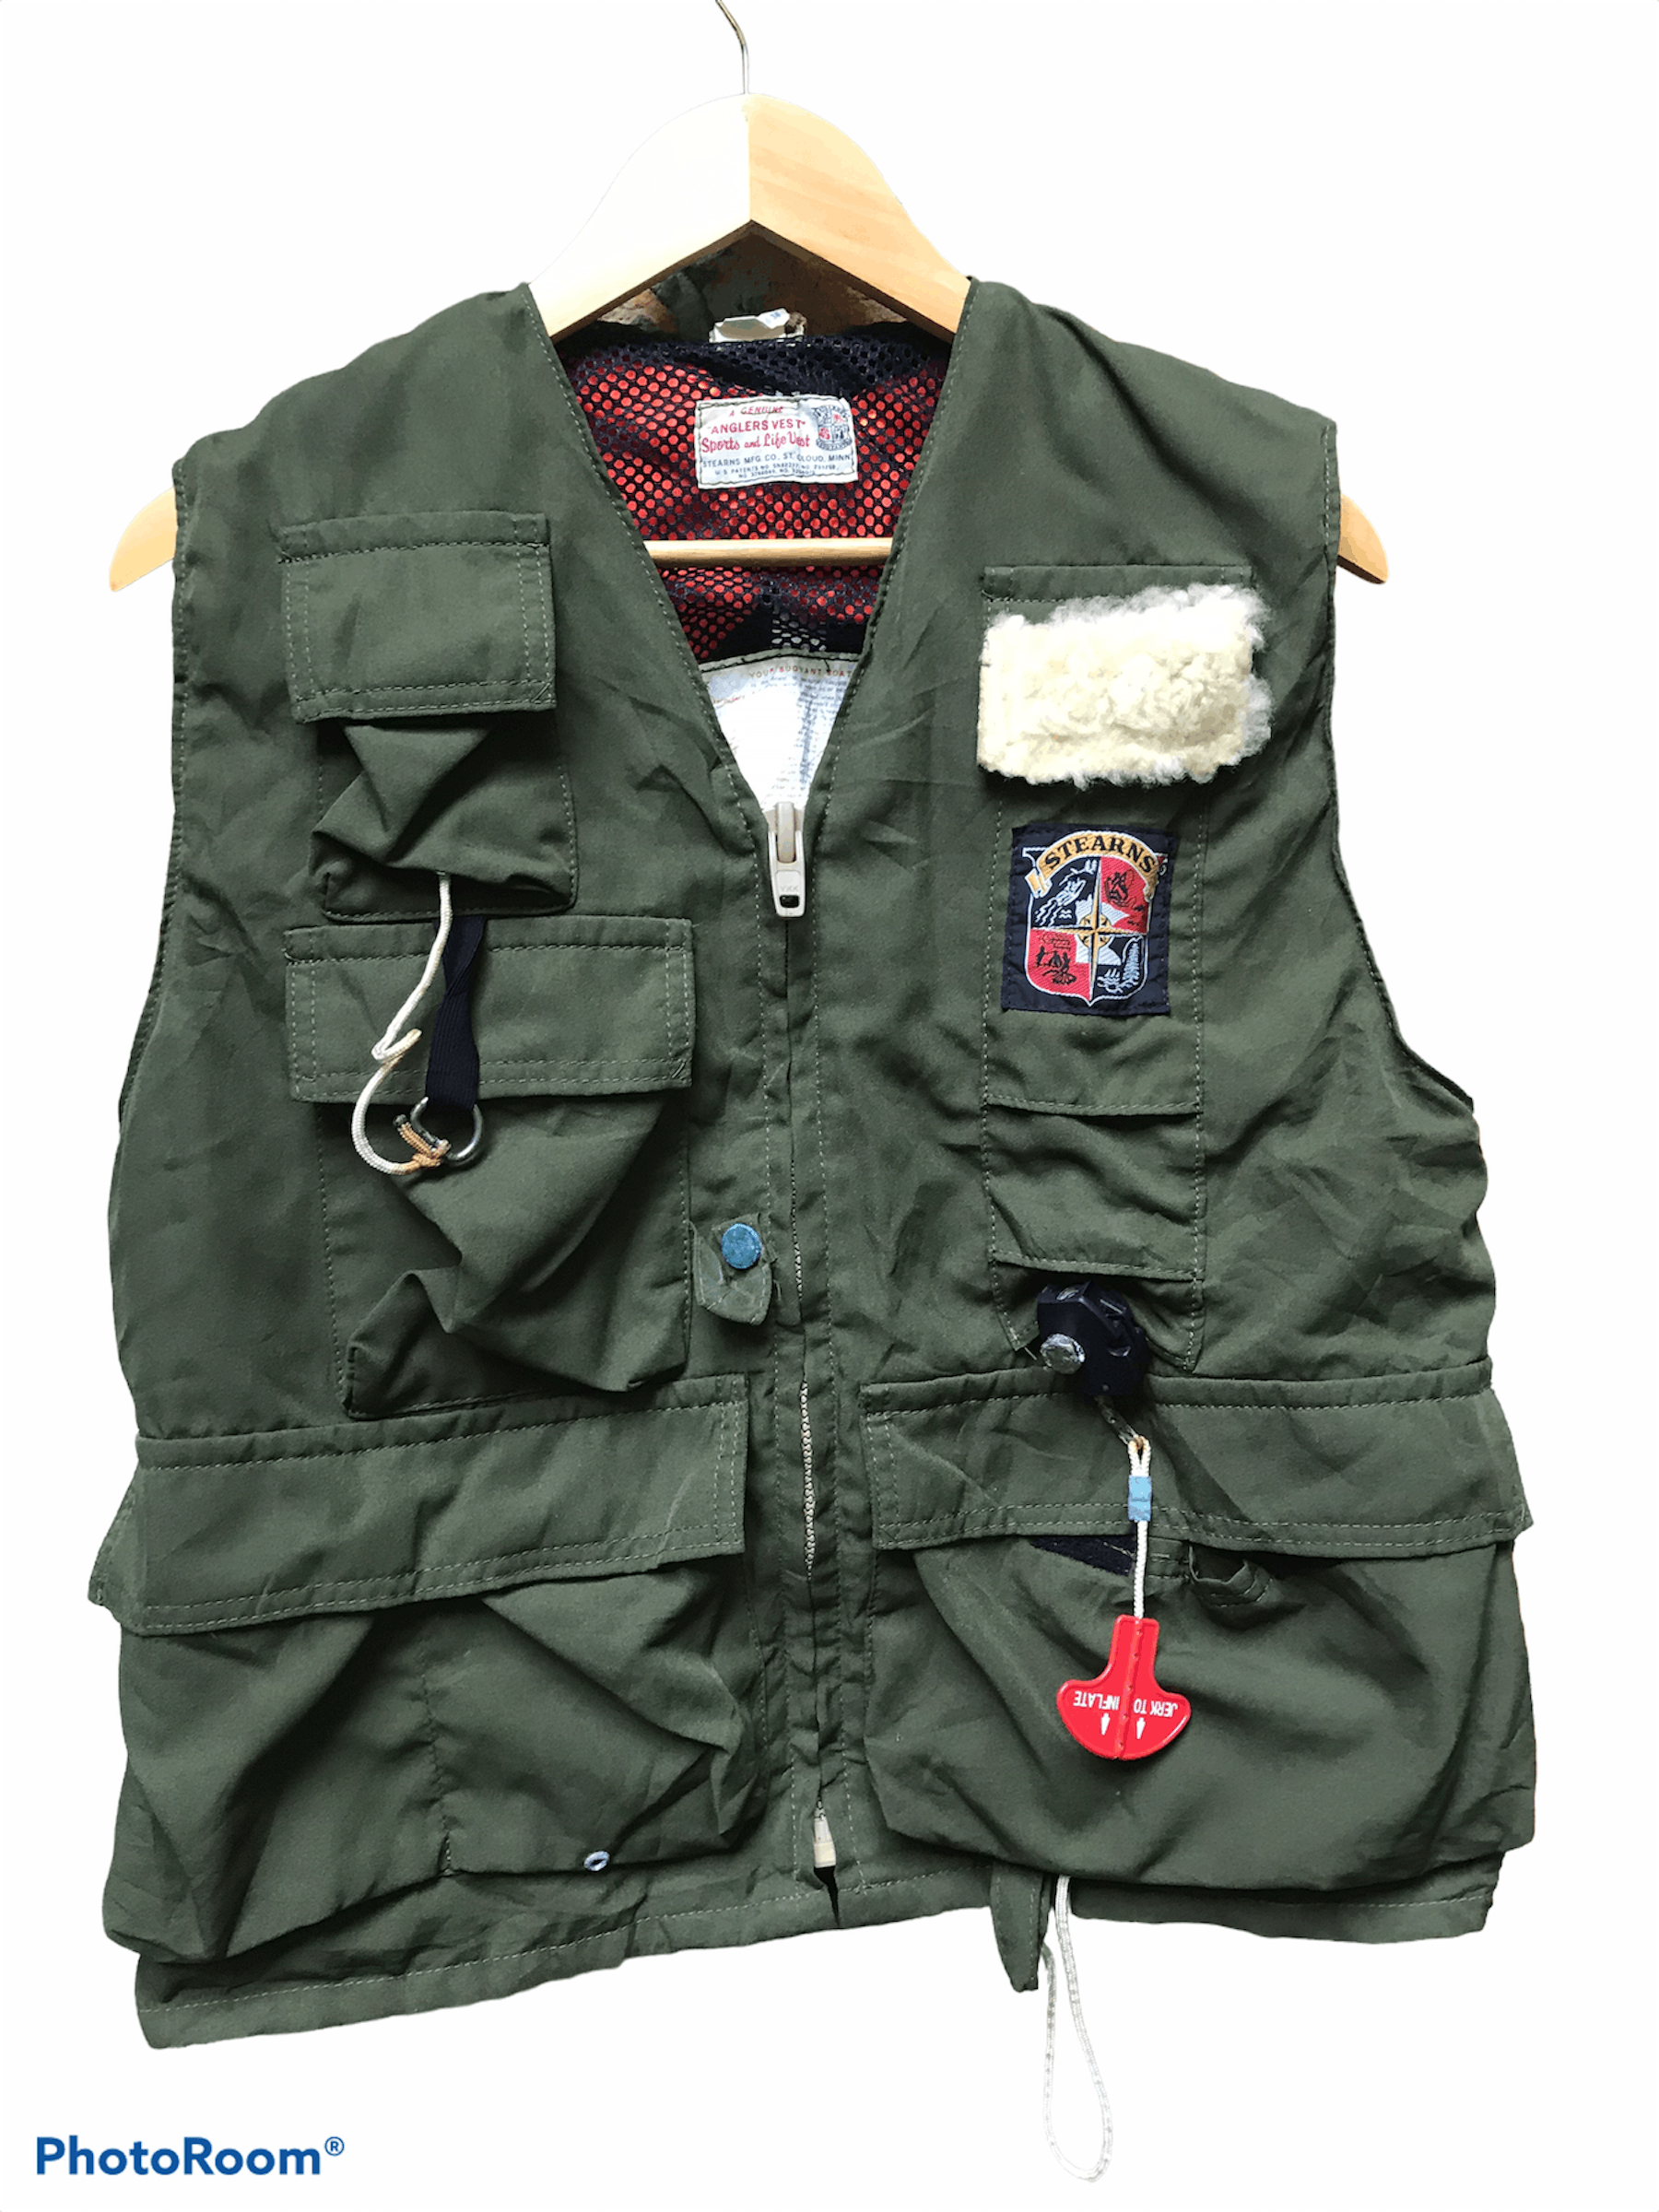 Vintage Stearns MFG Co Angler Vest Sports and life Vest